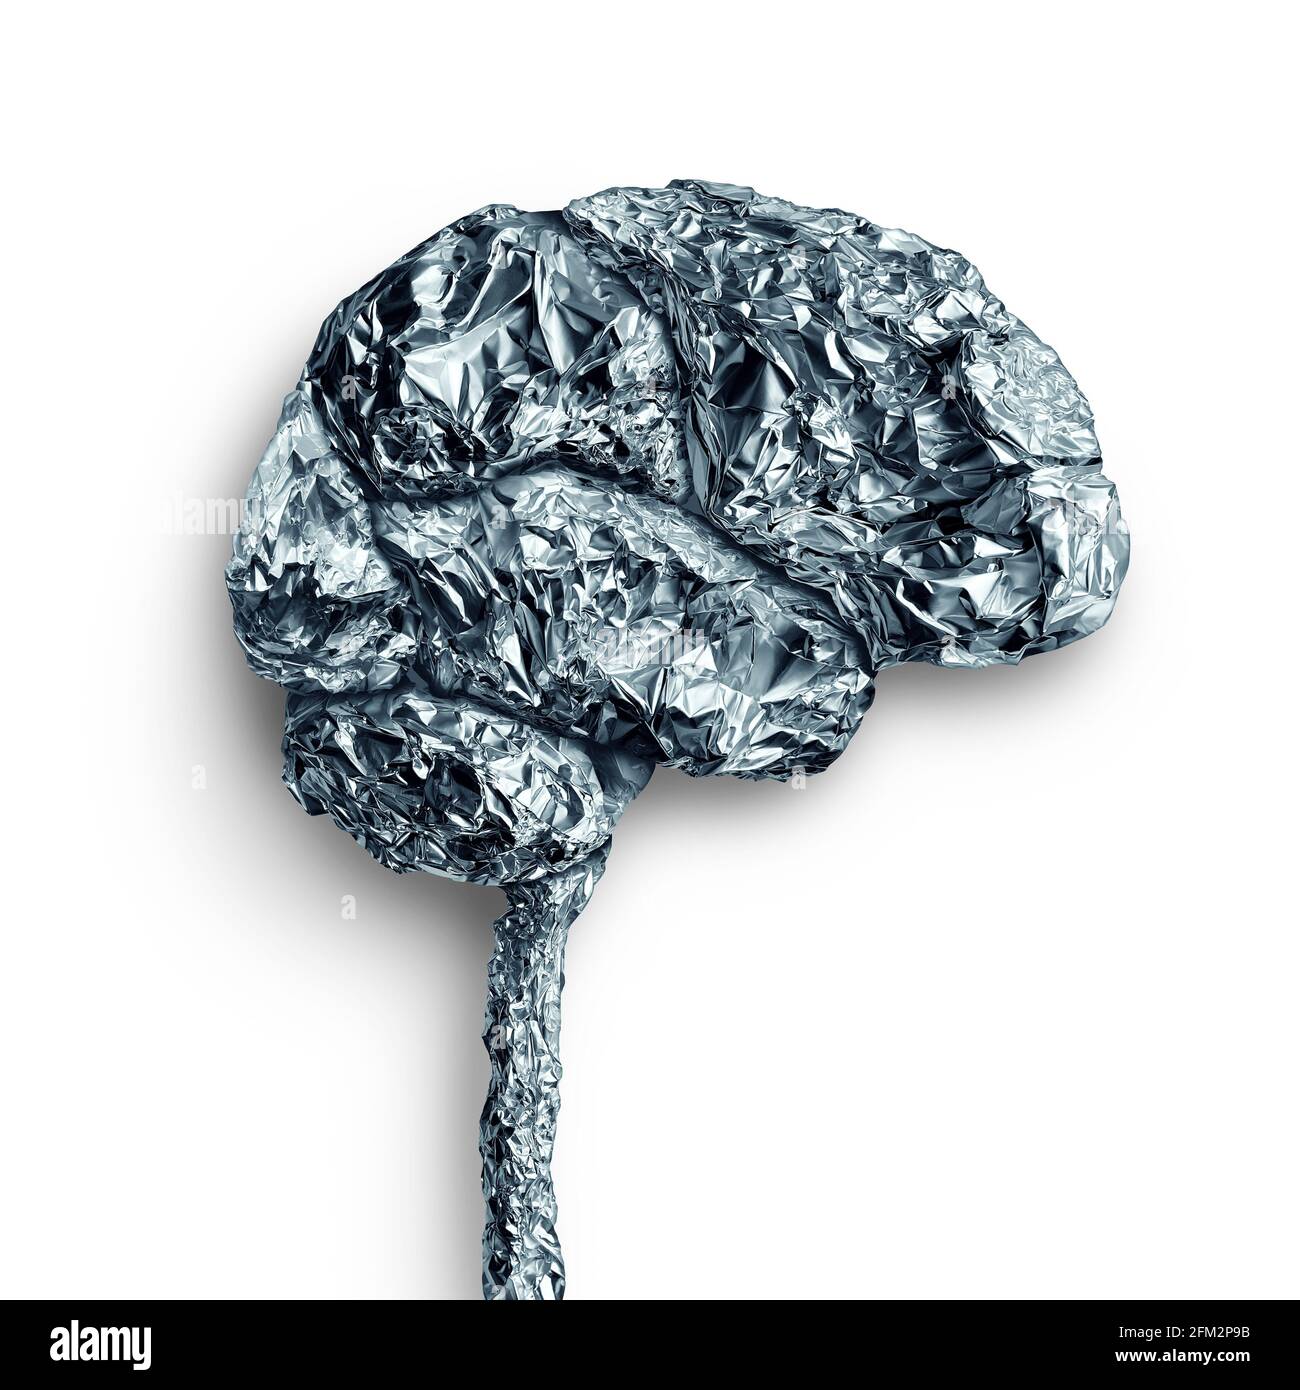 Il concetto di accumulo di metalli cerebrali e il lobo mentale umano come organo pensante fatto di materiale metallico come simbolo di neurologia e neuroscienza. Foto Stock